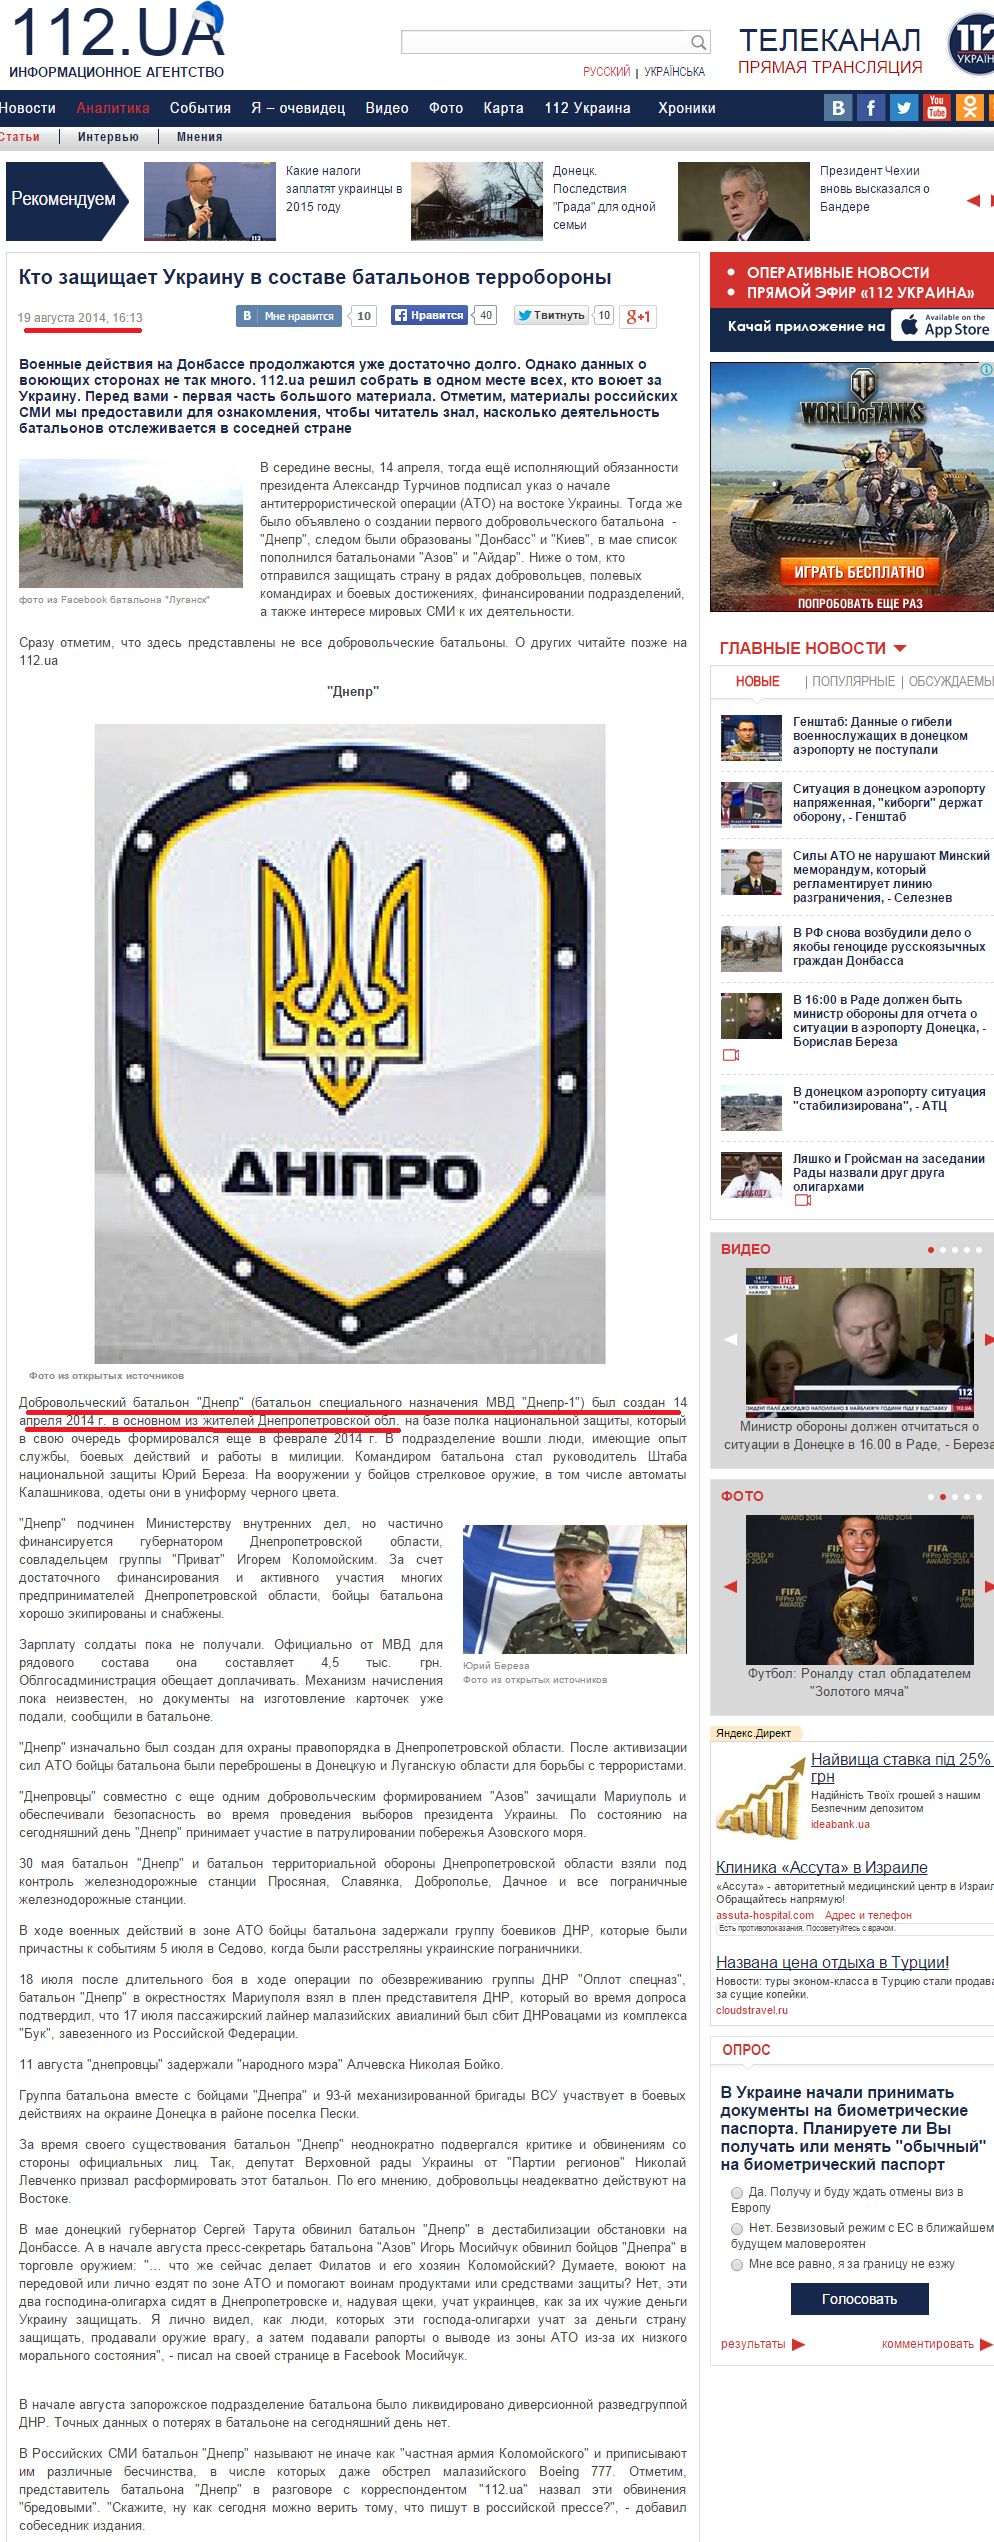 http://112.ua/statji/soldaty-po-duhu-kto-zaschischaet-ukrainu-v-sostave-dobrovolcheskih-batalonov-103721.html